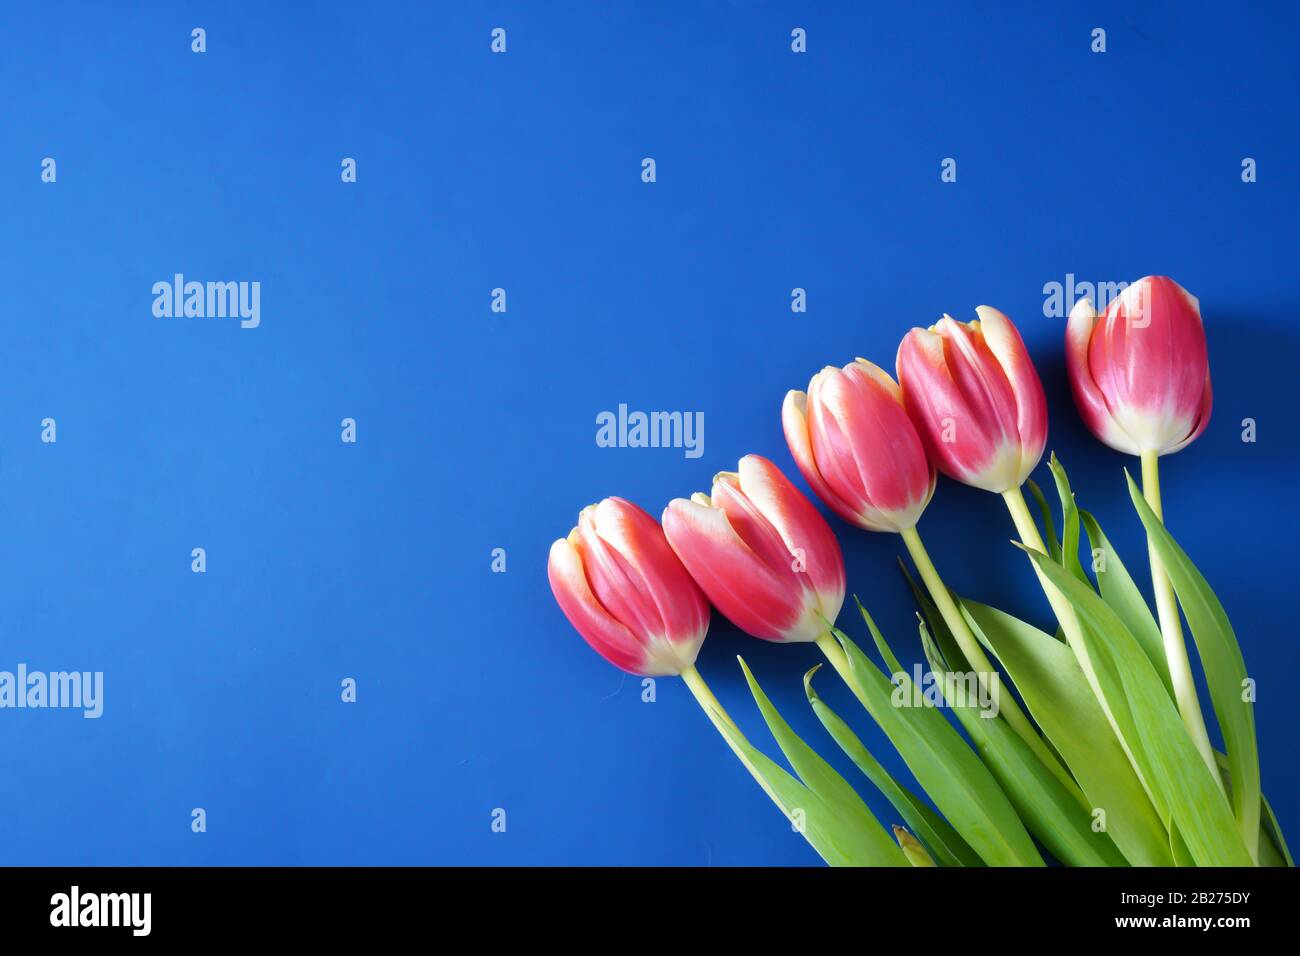 Cinque tulipani rosa brillante nell'angolo in basso a destra su un classico sfondo blu Pantone con spazio di copia; steli verdi Foto Stock